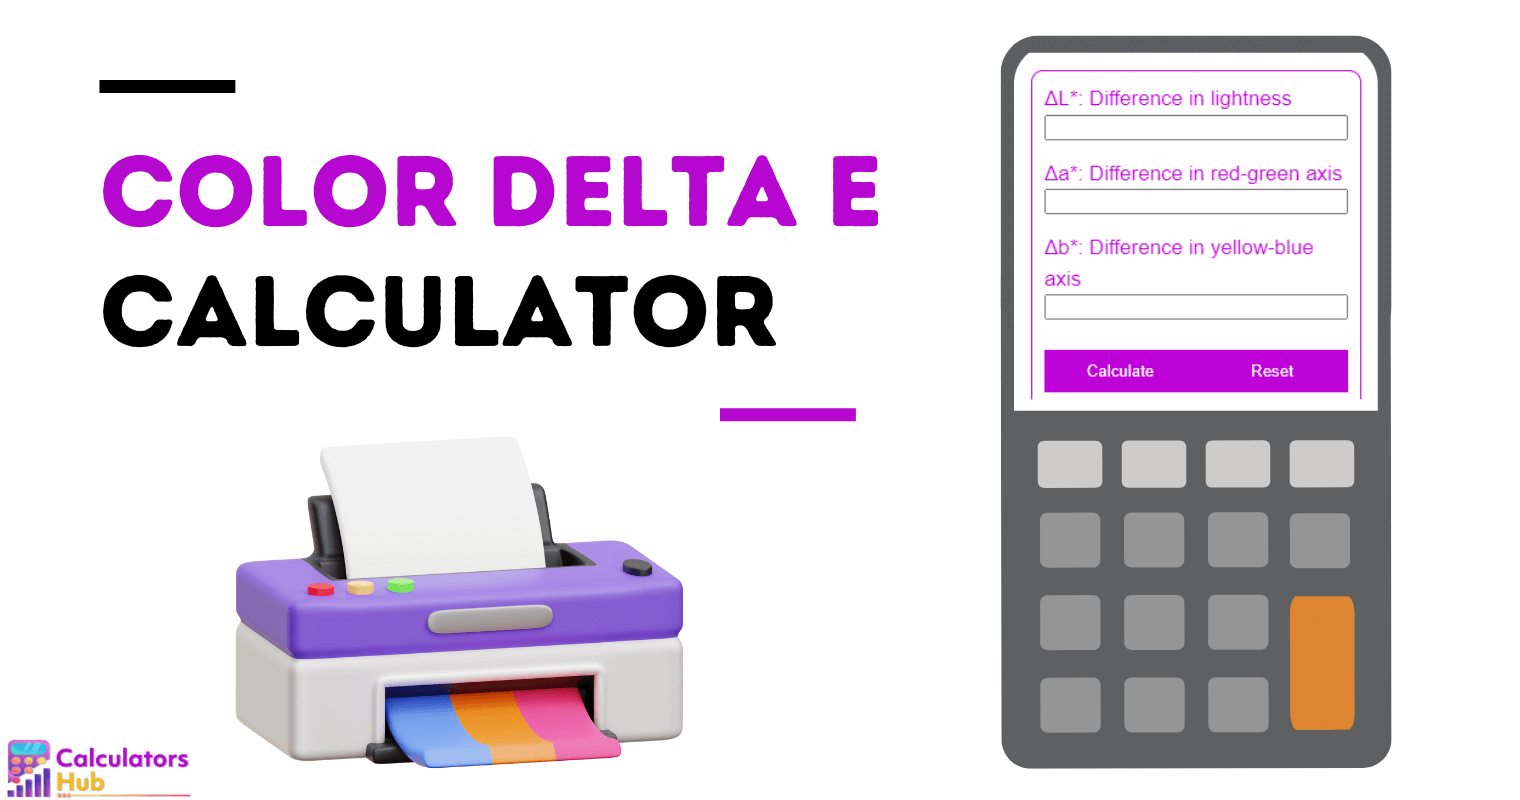 颜色 Delta E 计算器